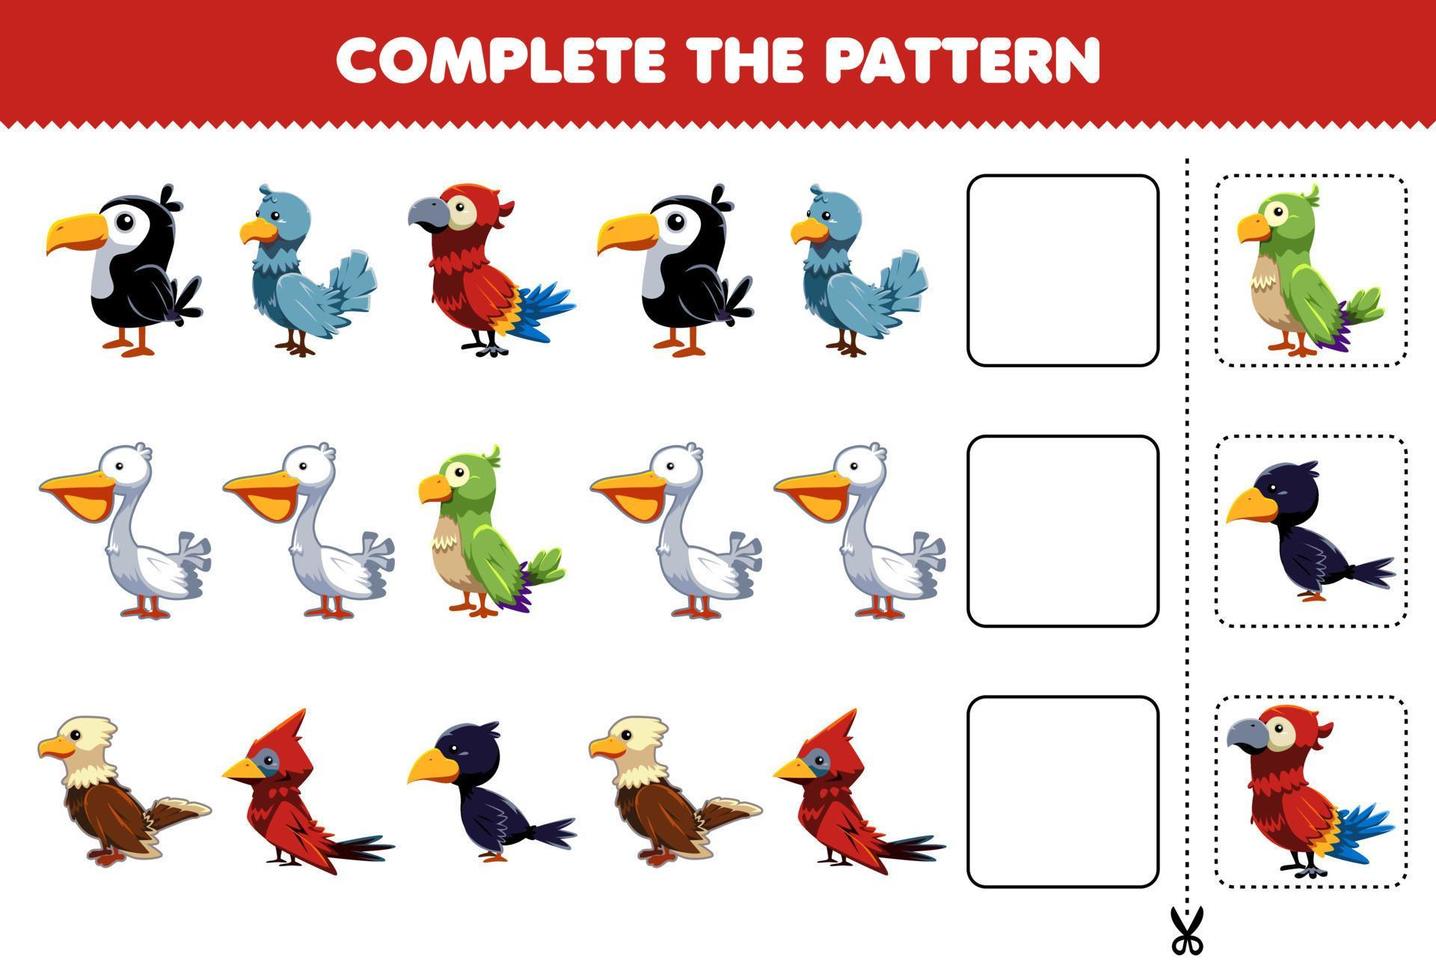 juego educativo para niños, complete el patrón de pensamiento lógico, encuentre la regularidad y continúe la tarea de la fila con un lindo personaje de pájaro vector